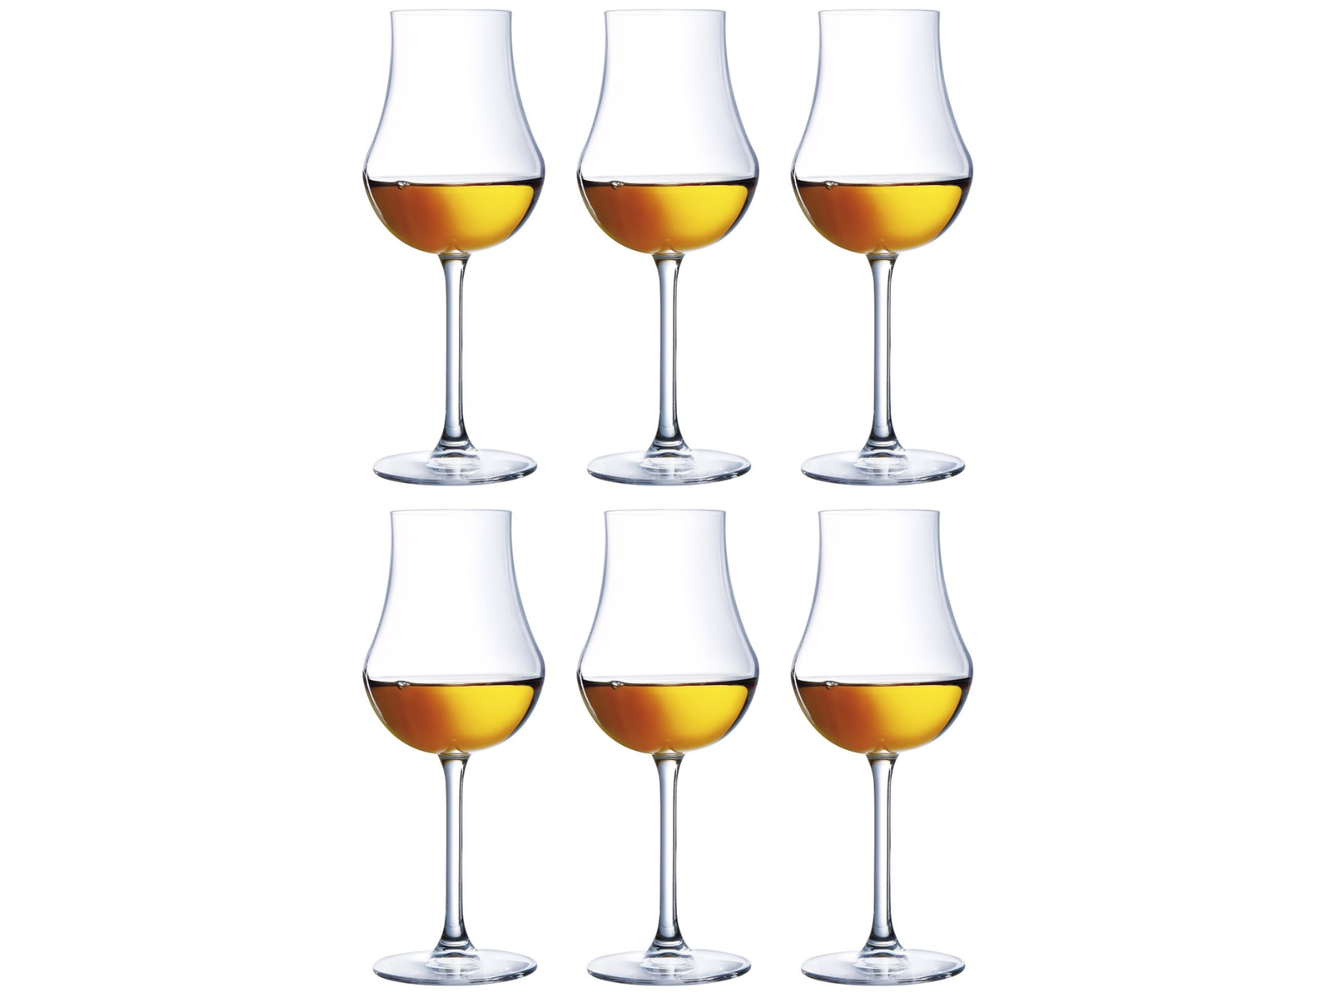 Bicchiere di vetro alto - CHEF & SOMMELIER™ - Primary Personalizzato, Prezzo Basso Garantito